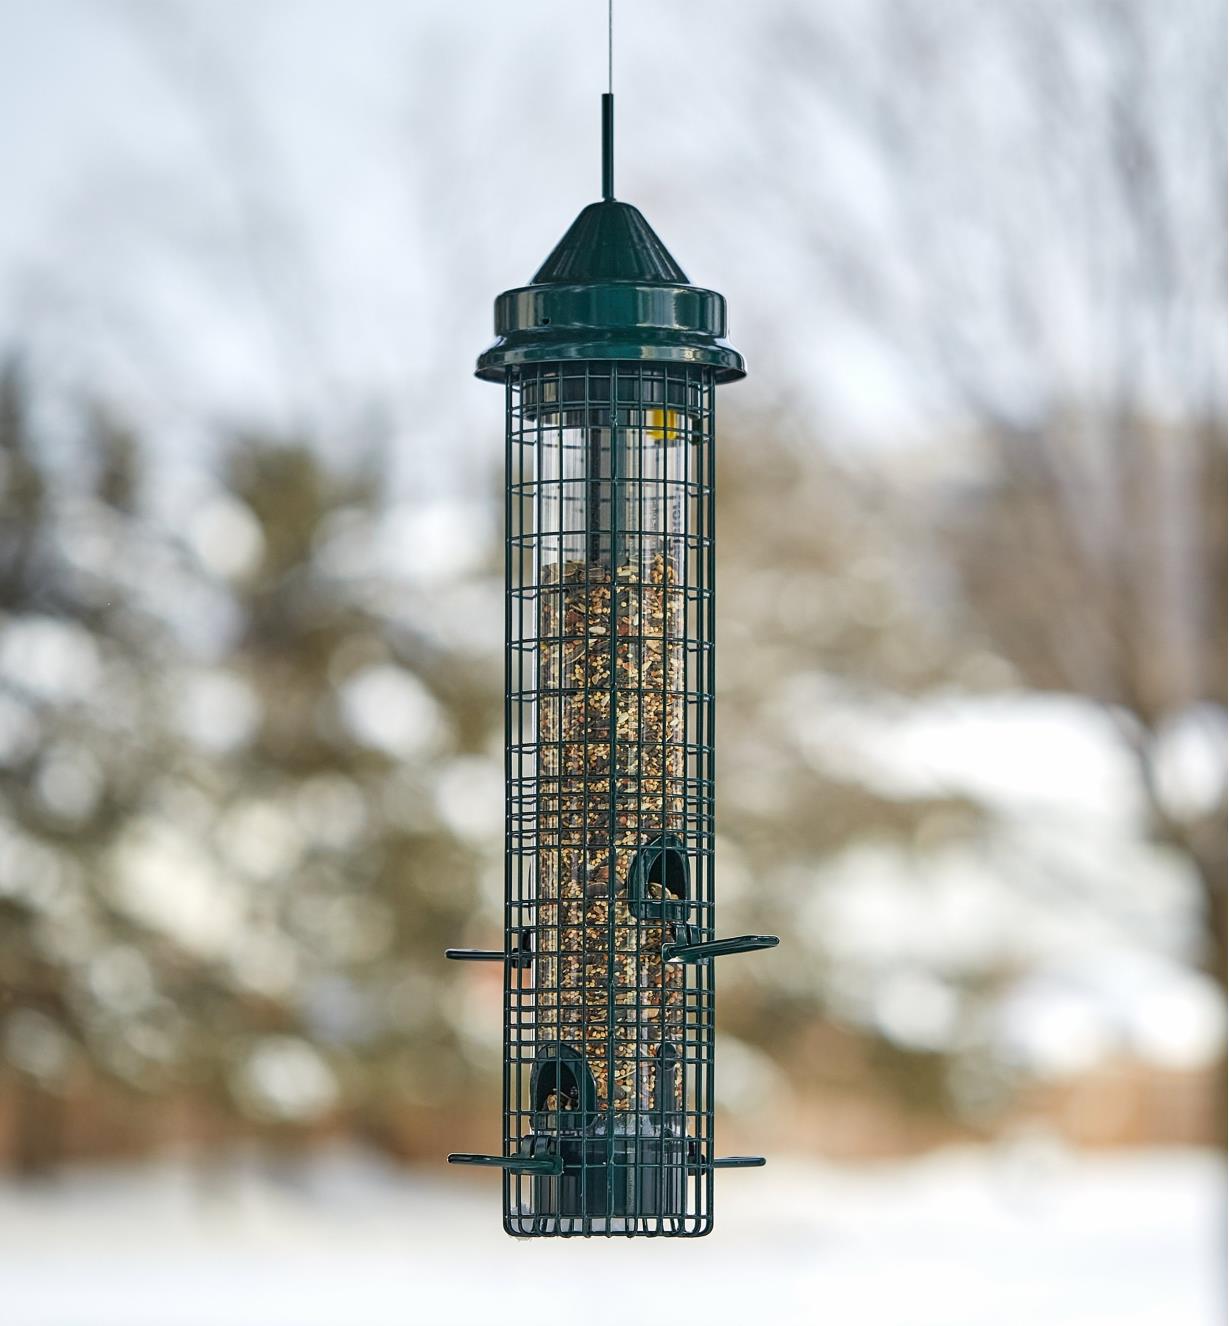 A bird feeder full of seeds hangs outdoors